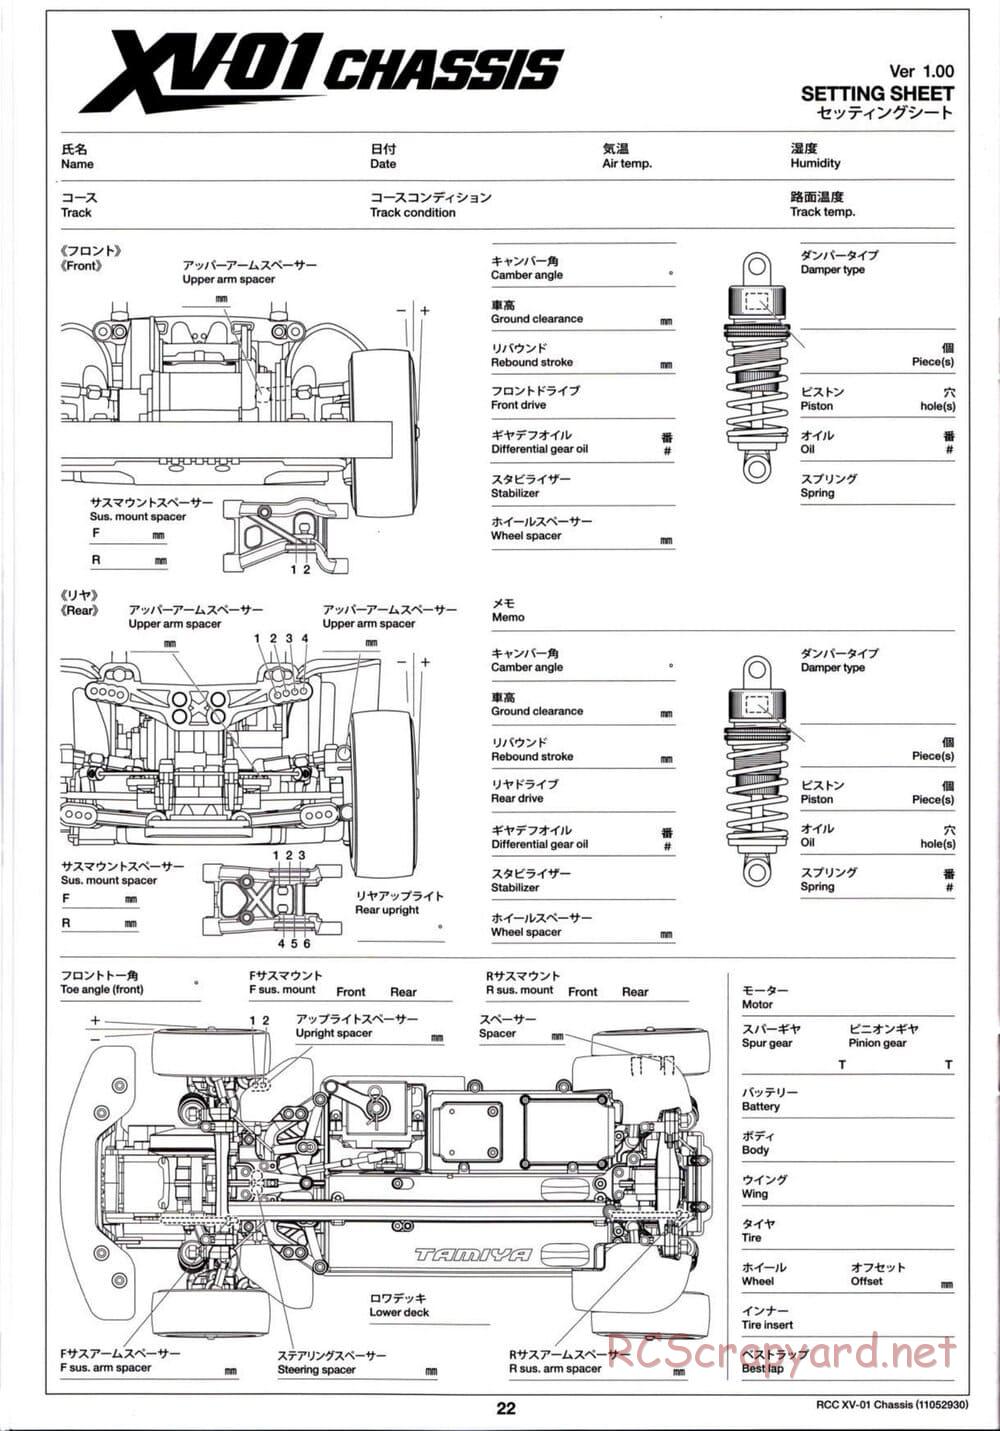 Tamiya - XV-01 Chassis - Manual - Page 23